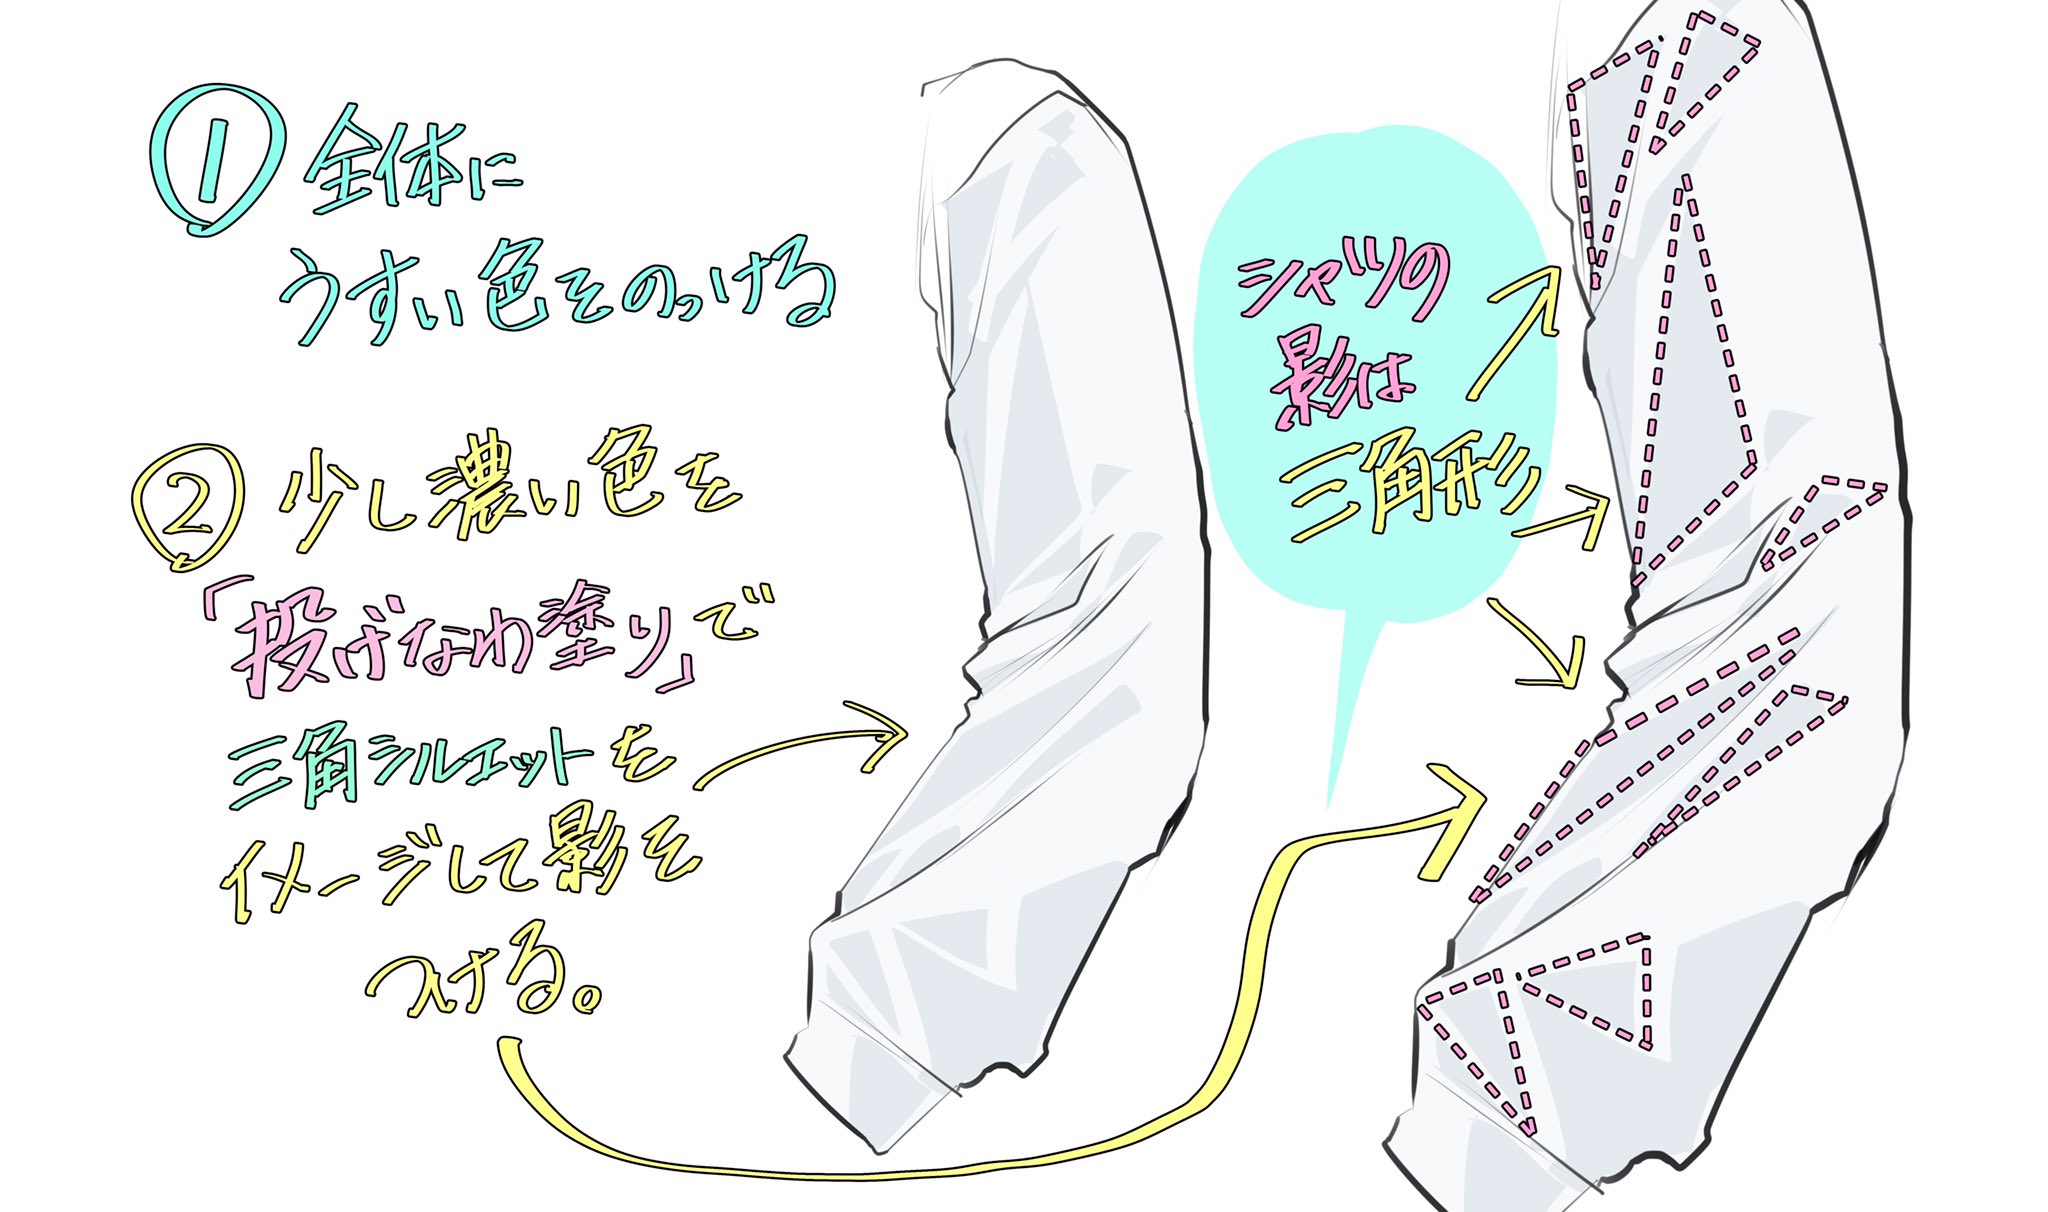 吉村拓也 イラスト講座 女性のシャツの描き方 500rt 1700イイね ありがとうございます プチ解説 イラスト もよければどうぞ